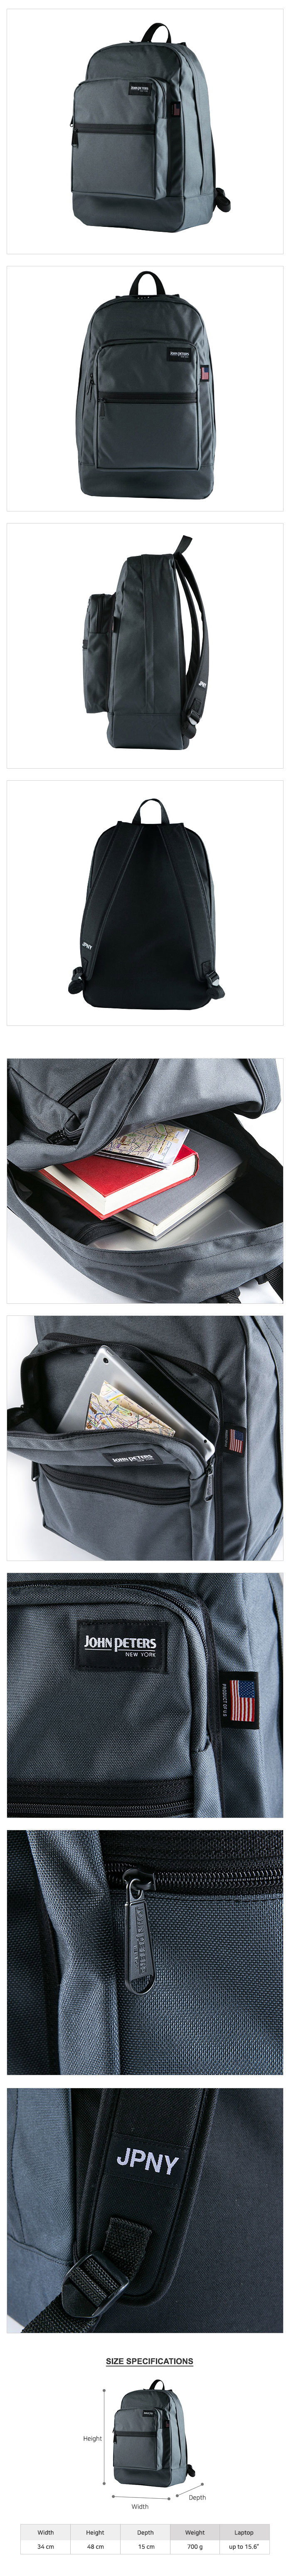 N5152 Laptop Backpack Gray